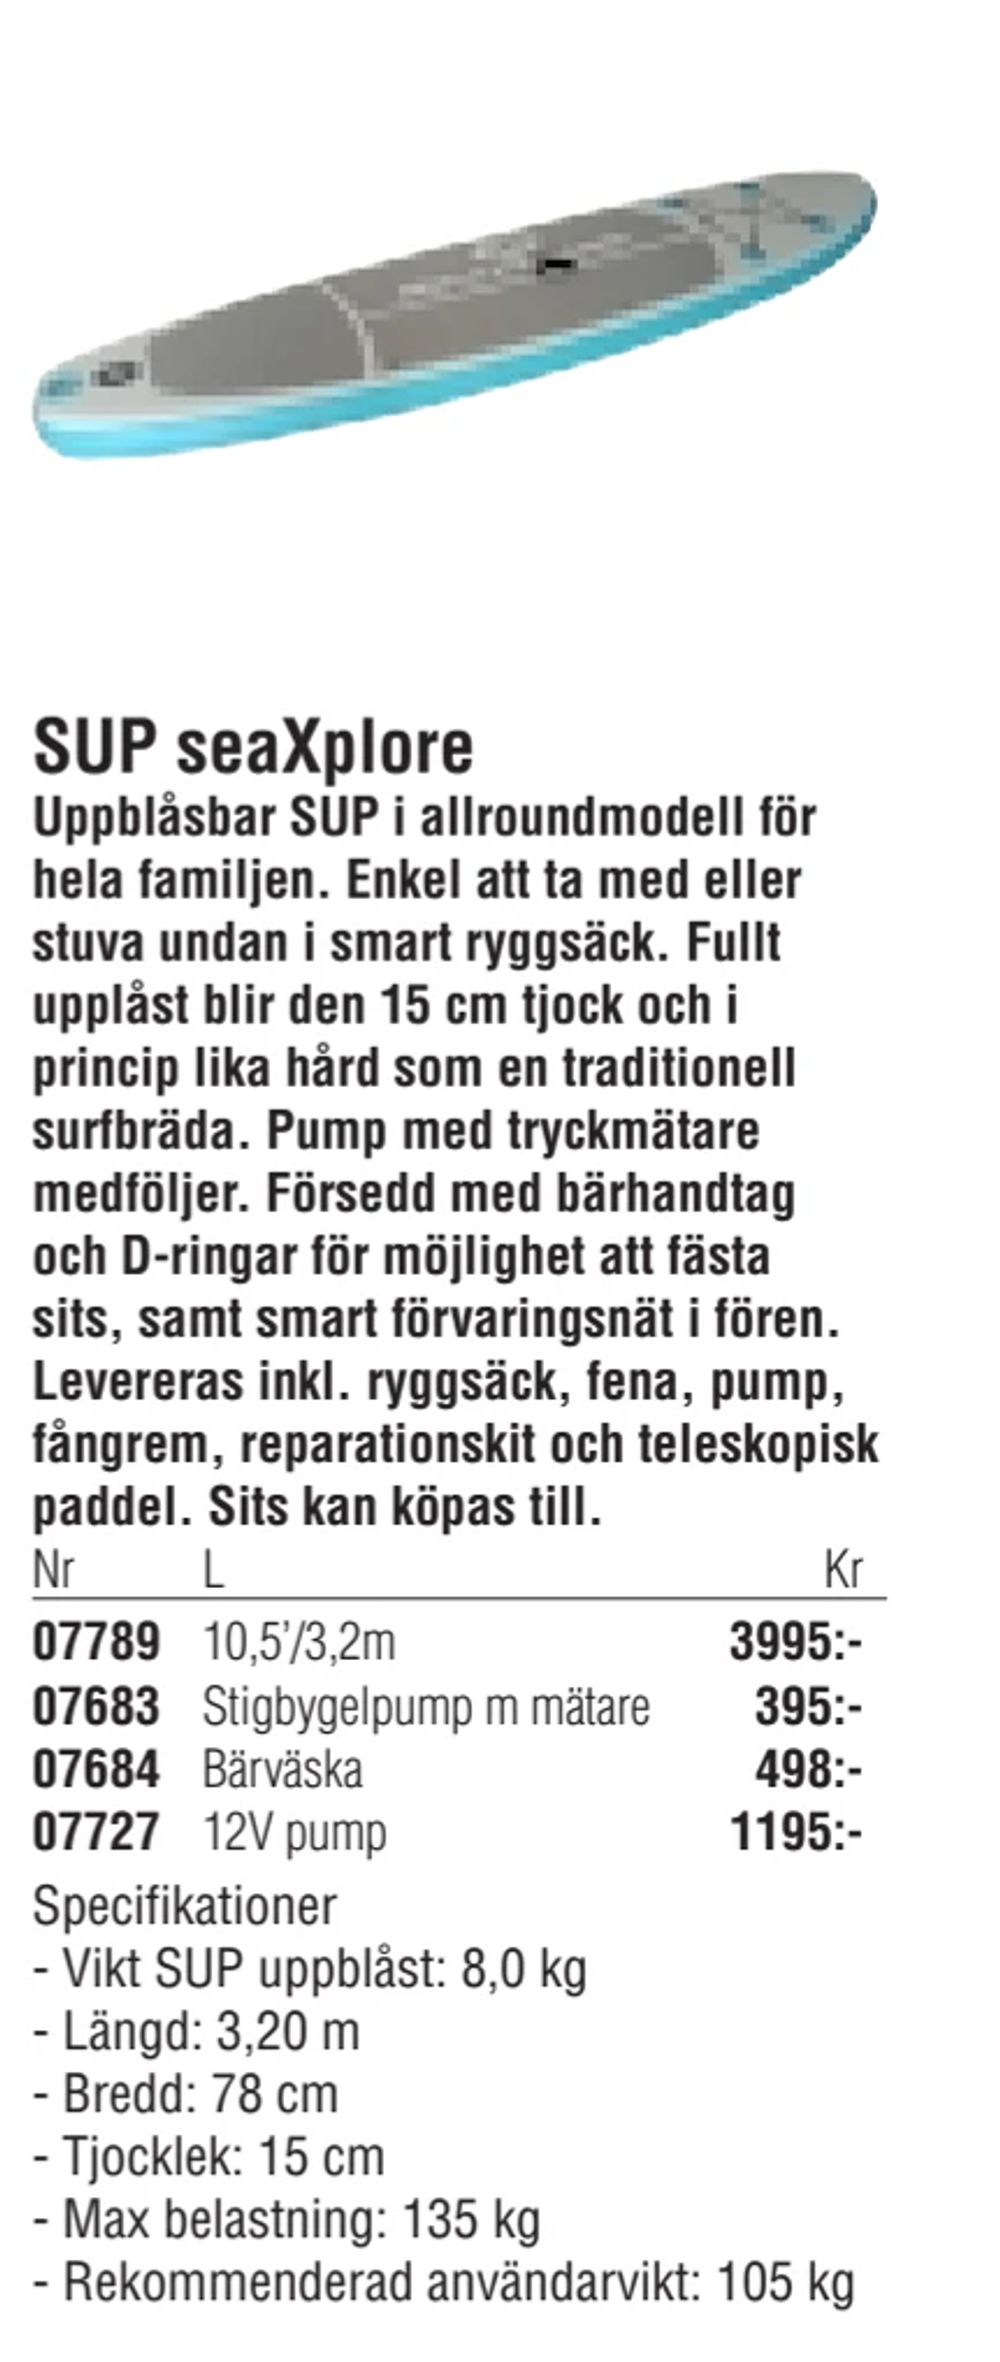 Erbjudanden på SUP seaXplore från Erlandsons Brygga för 3 995 kr